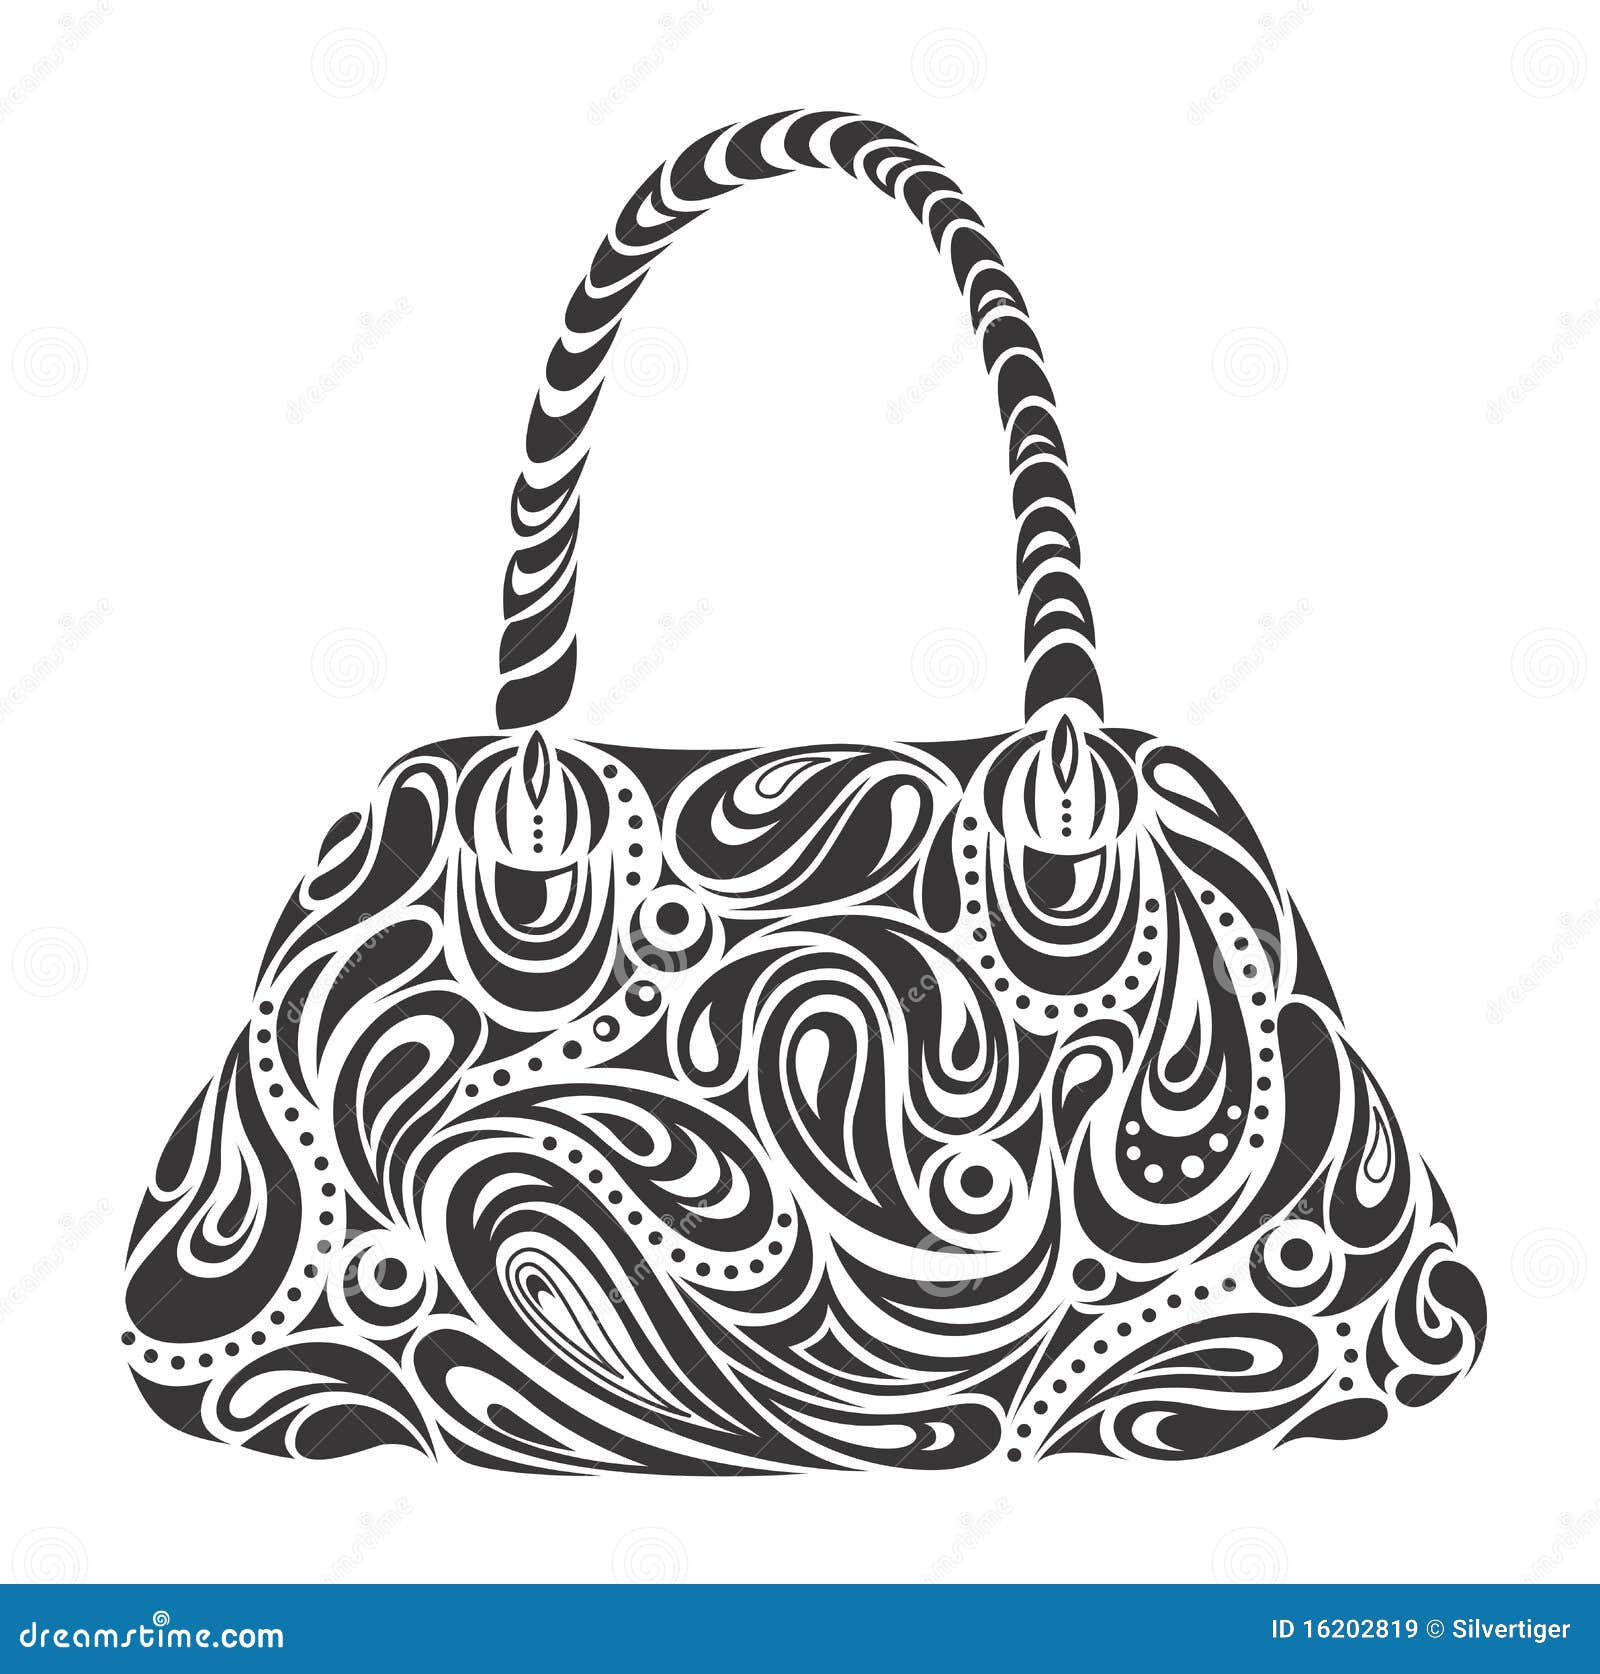 Designer Bag Stock Vector Illustration and Royalty Free Designer Bag Clipart